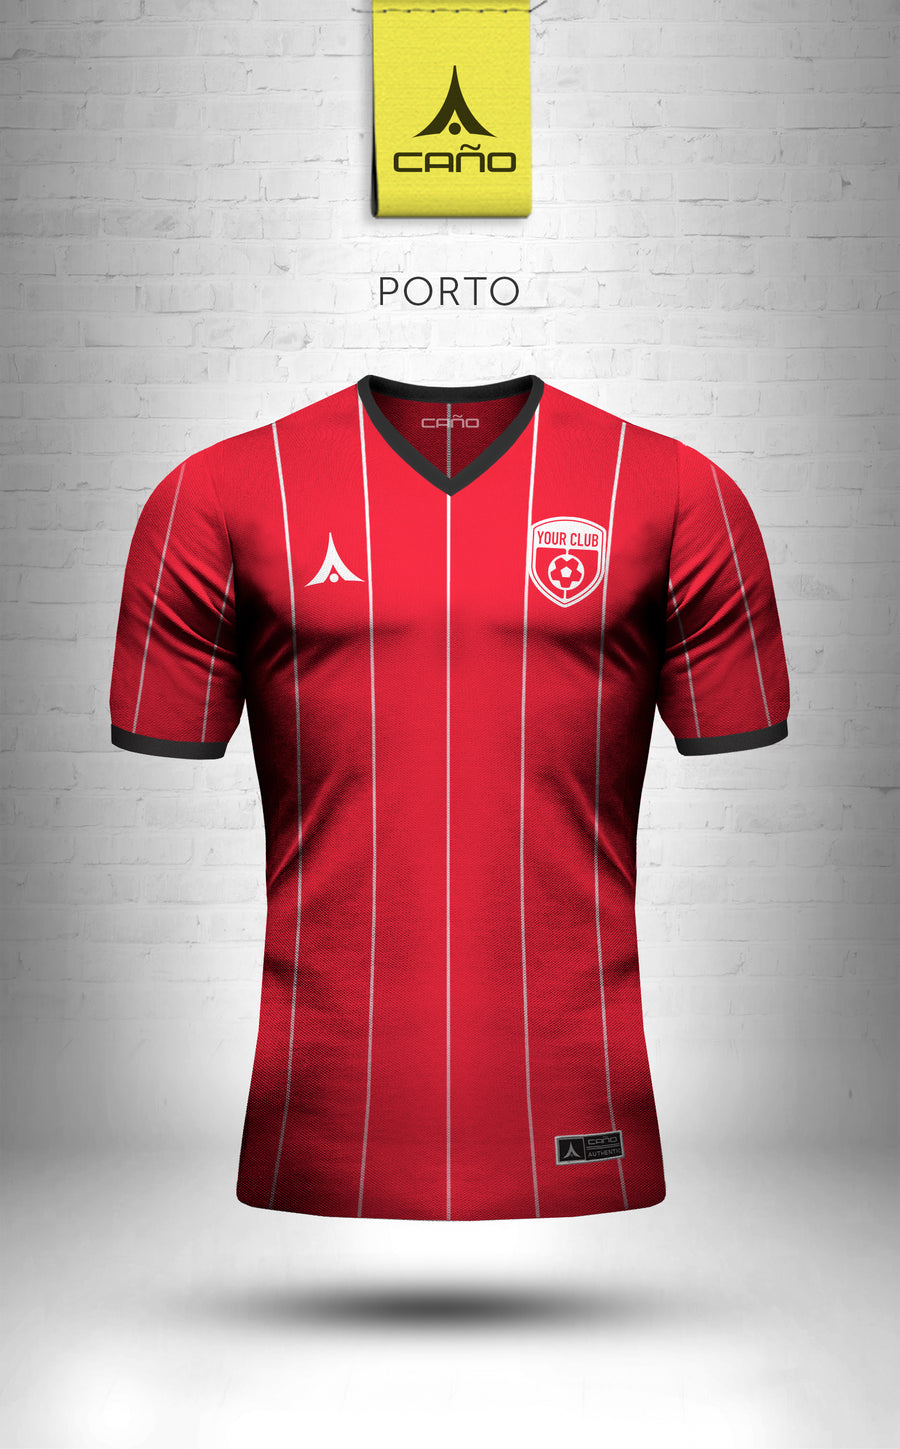 Porto in red/black/white